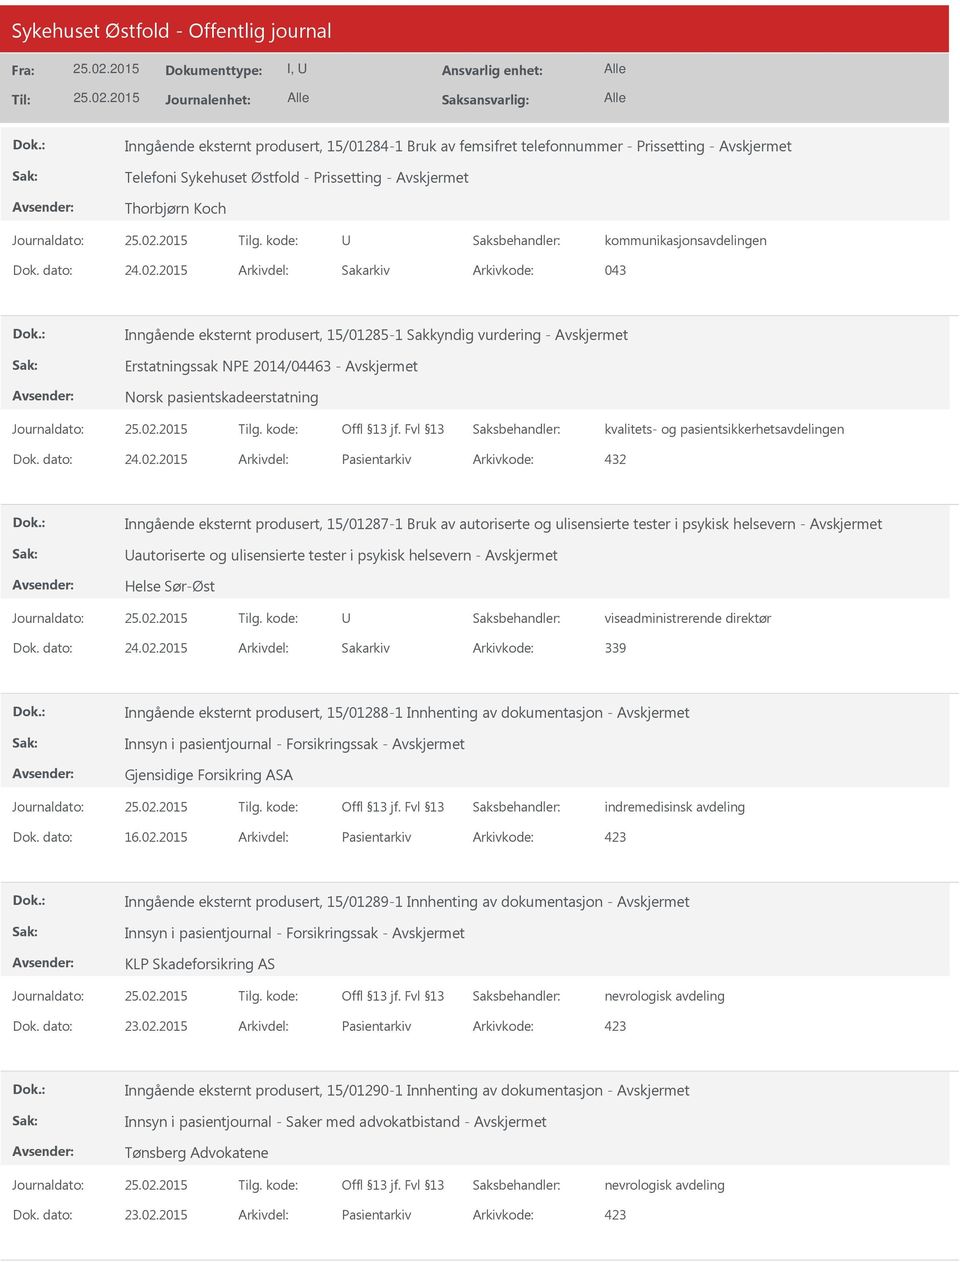 2015 Arkivdel: Pasientarkiv Arkivkode: 432 Inngående eksternt produsert, 15/01287-1 Bruk av autoriserte og ulisensierte tester i psykisk helsevern - autoriserte og ulisensierte tester i psykisk